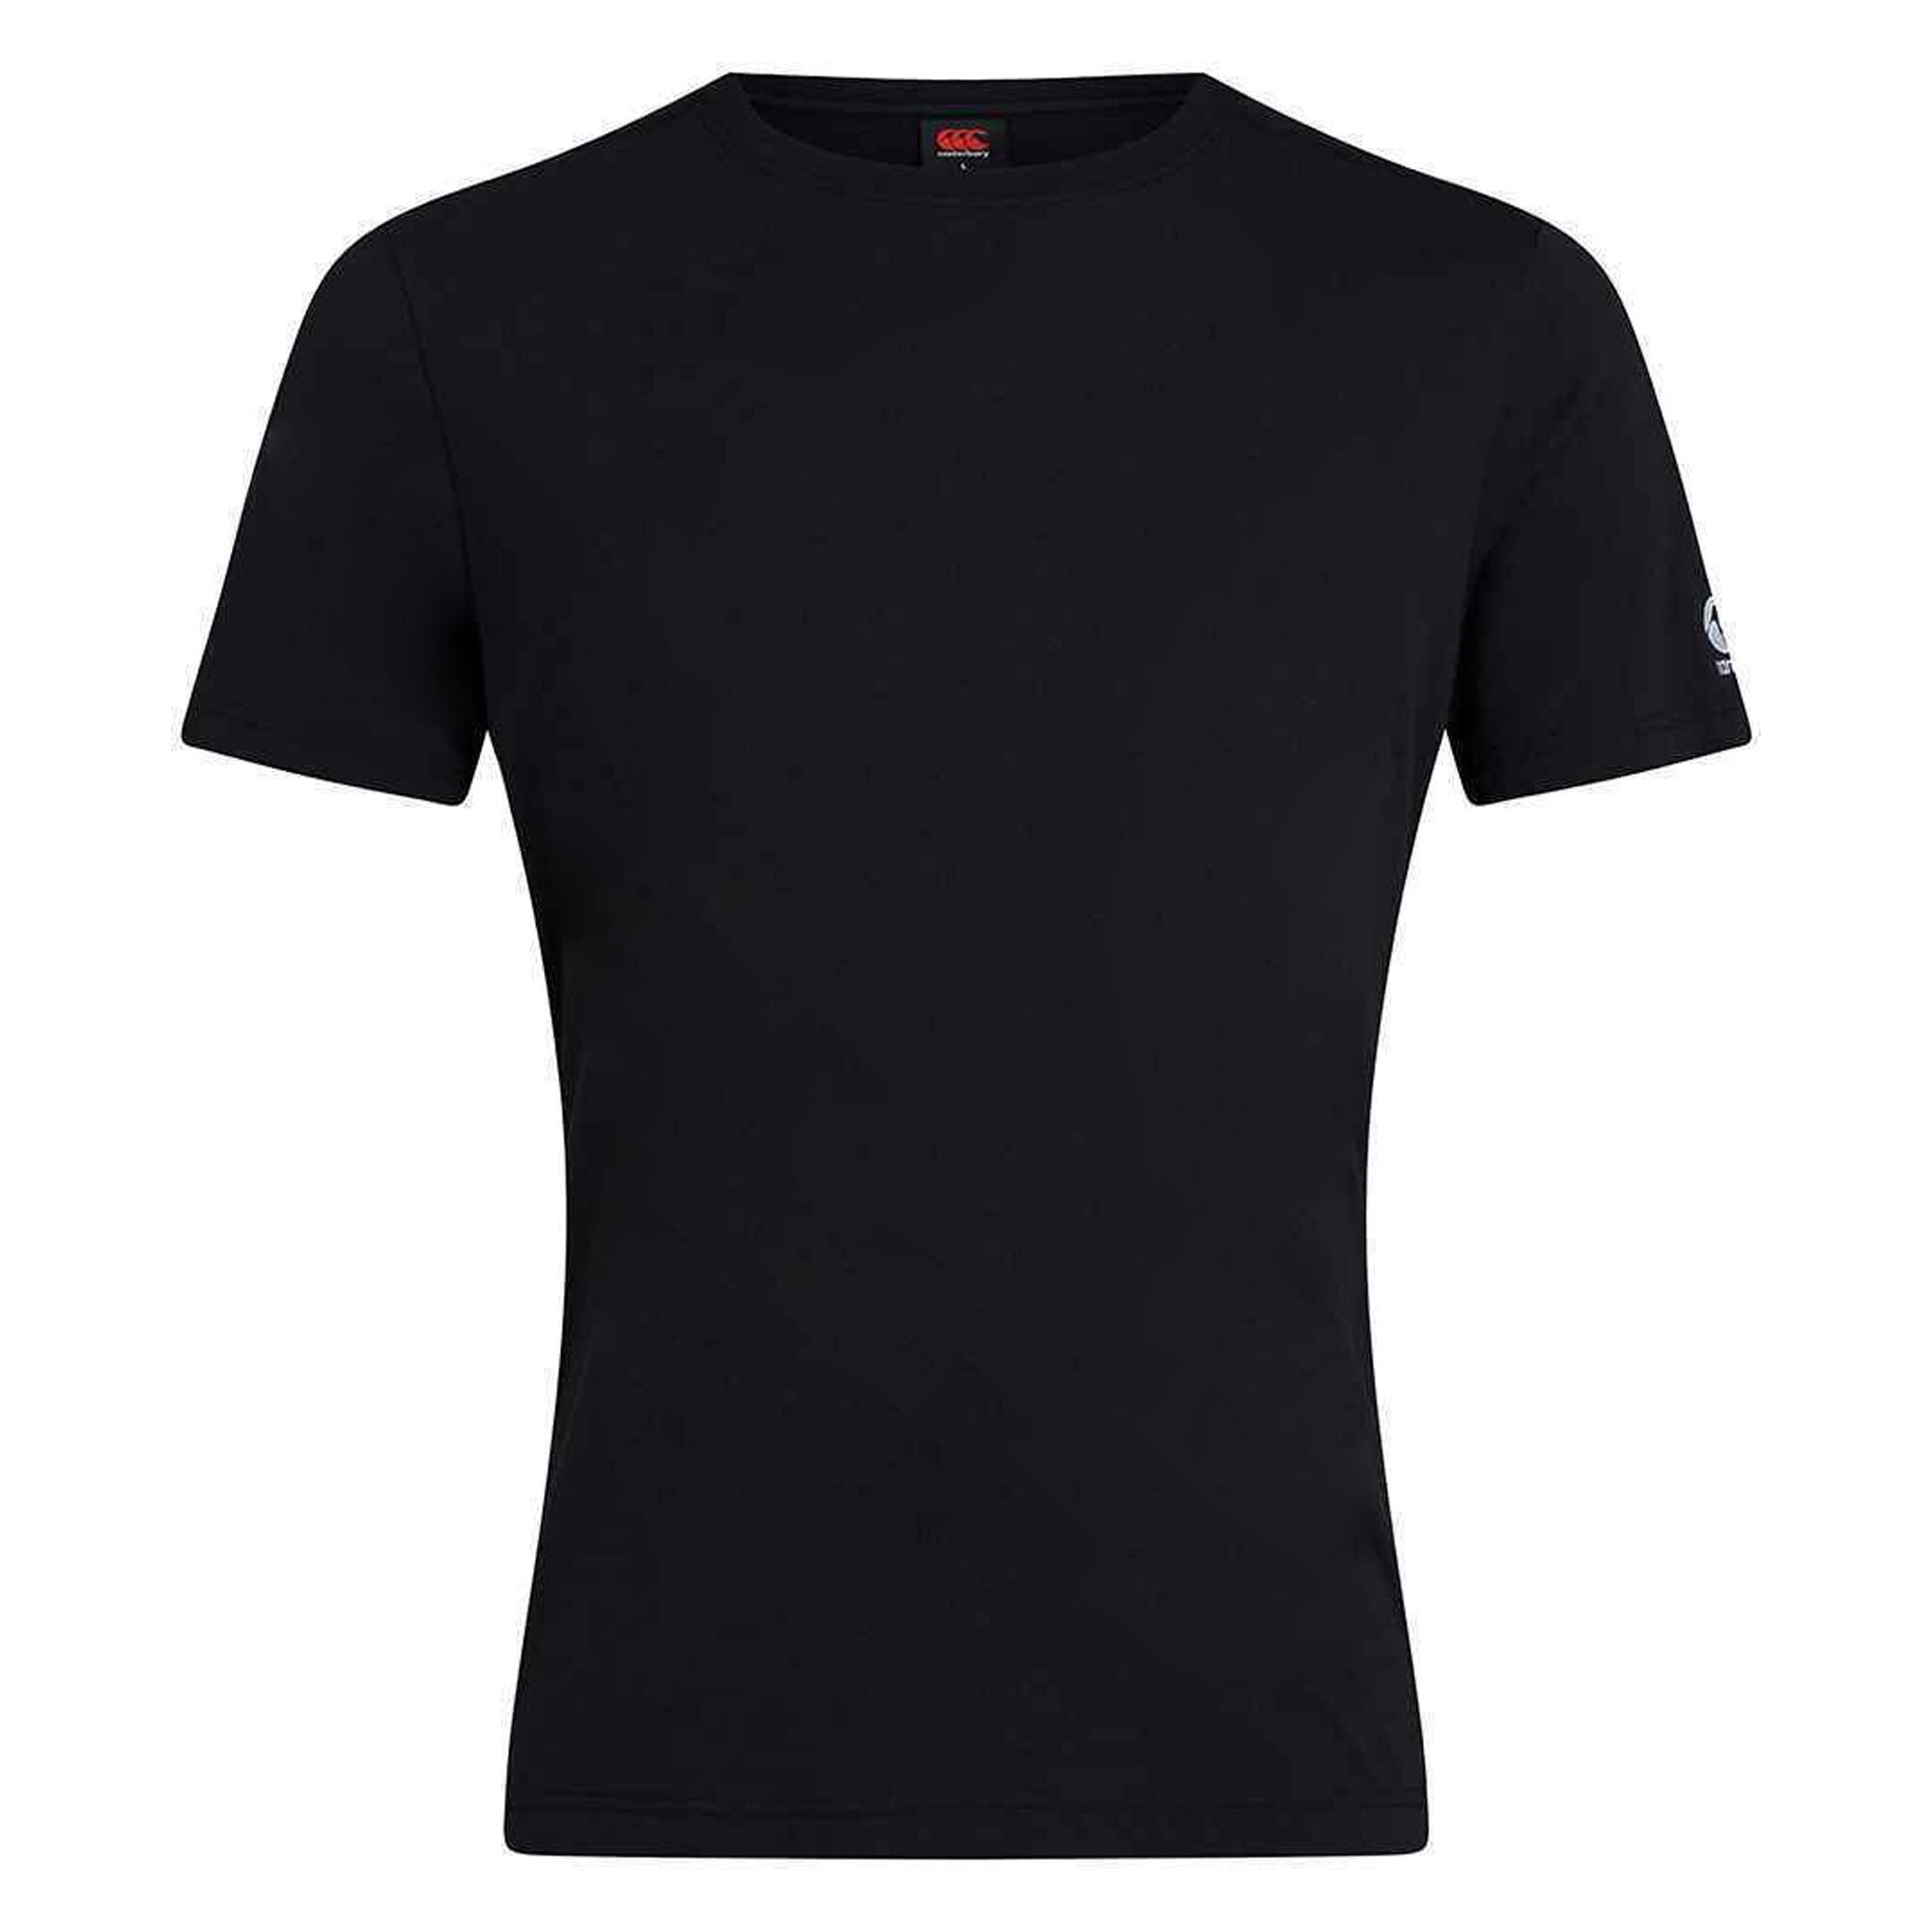 CANTERBURY Unisex Adult Club Plain TShirt (Black)